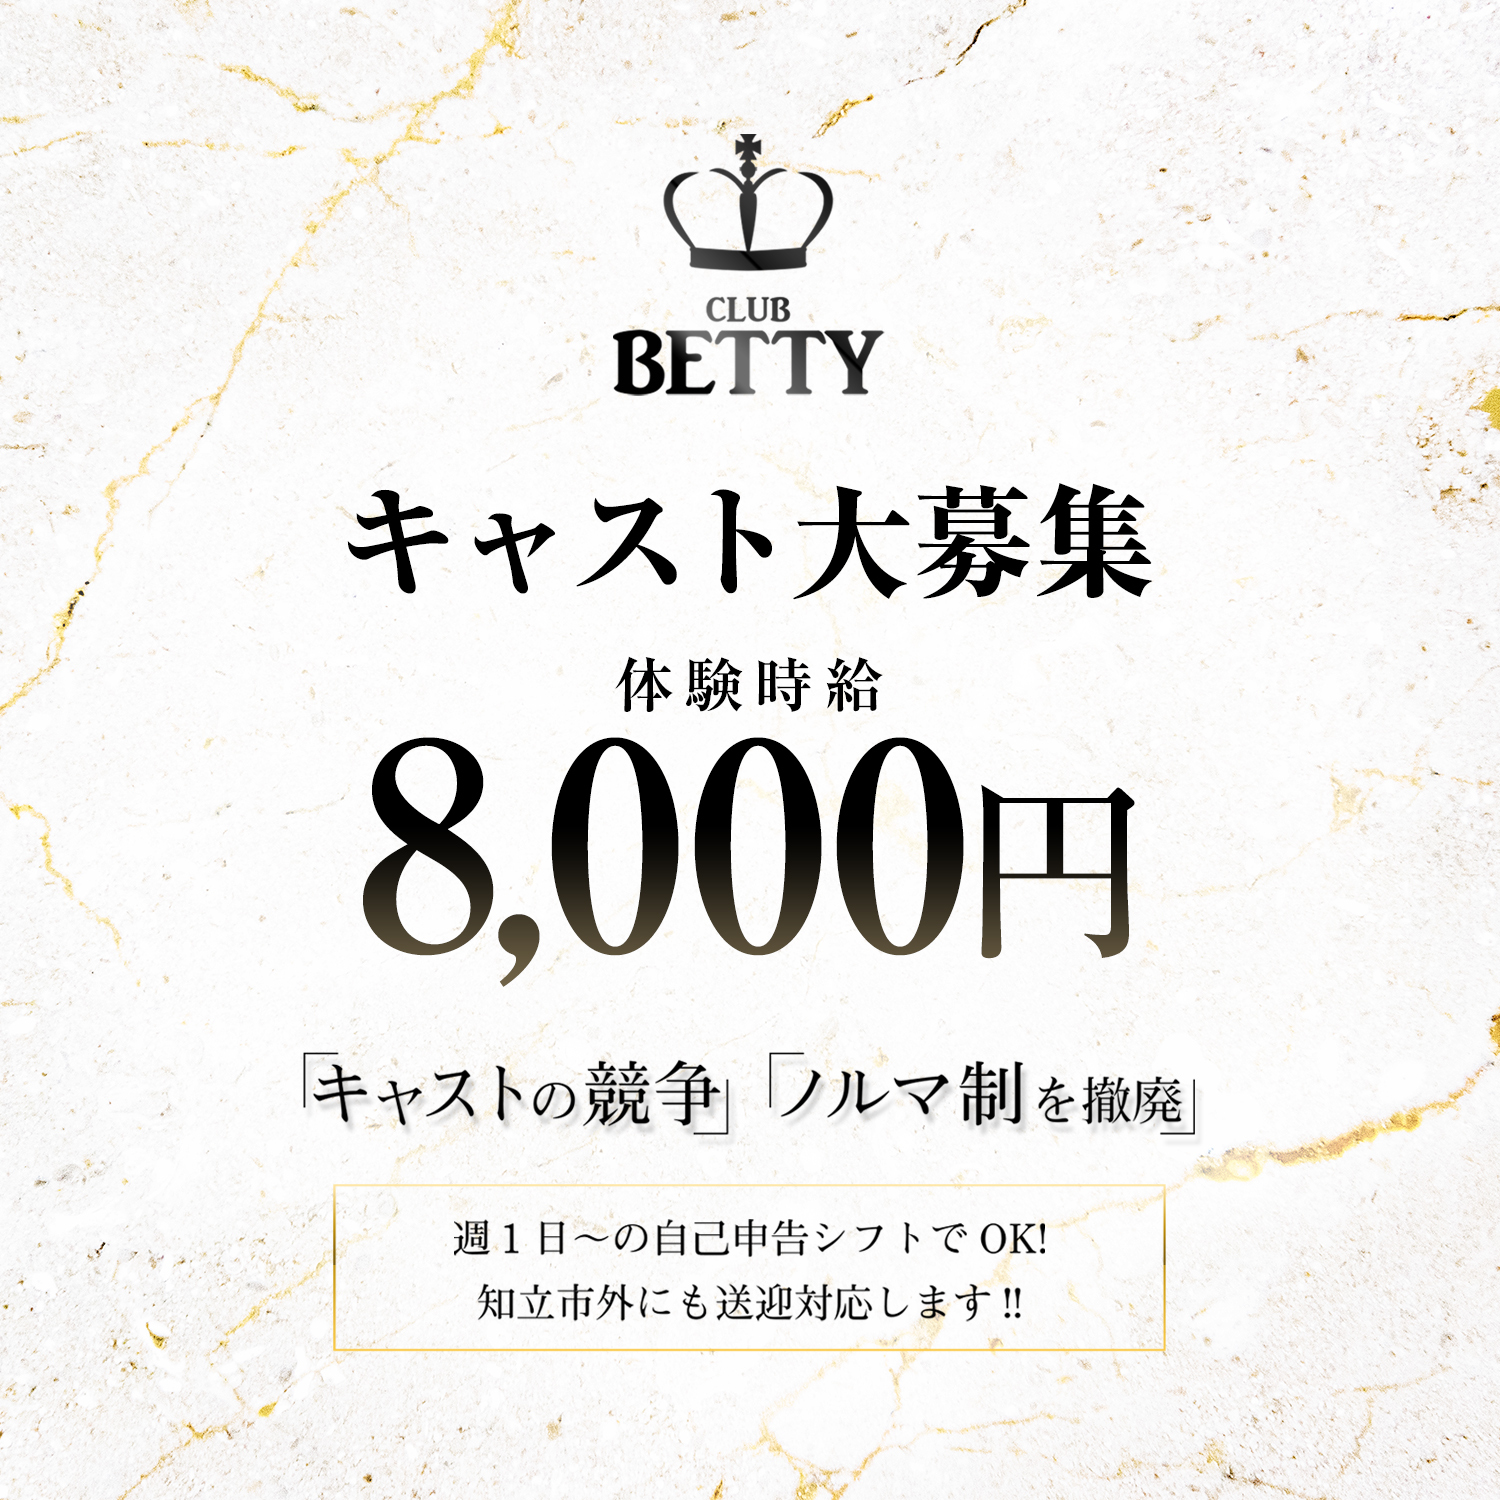 知立 キャバクラ「CLUB BETTY」ショップニュース